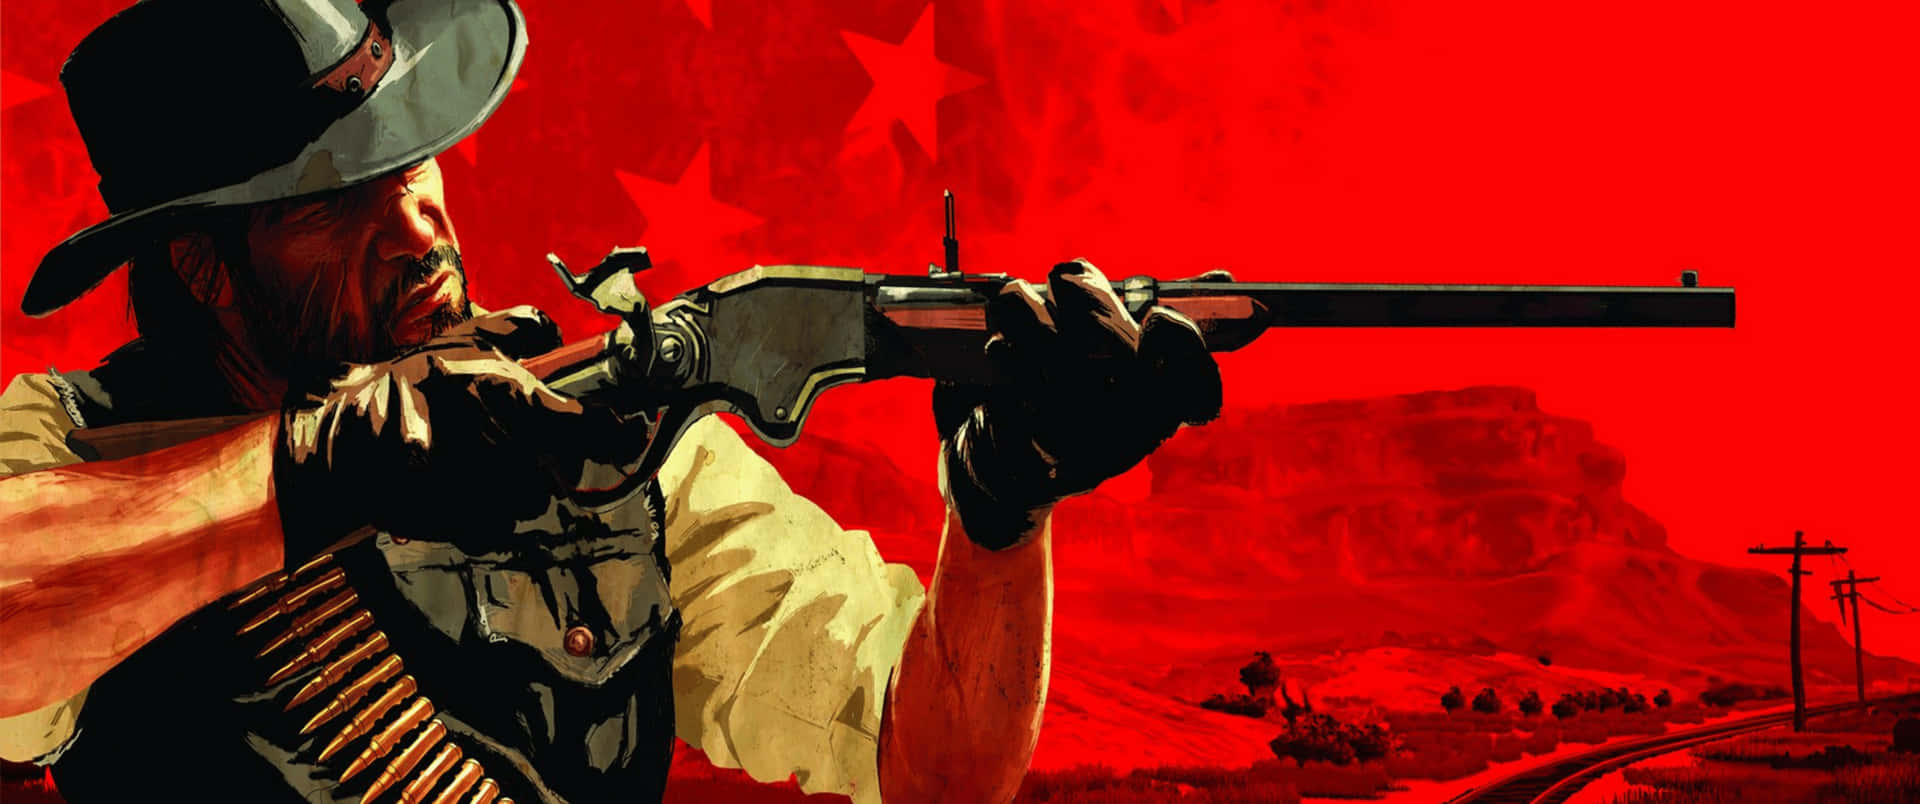 Fondode Pantalla De Red Dead Redemption 2 Rifle Con Resolución 3440x1440p.